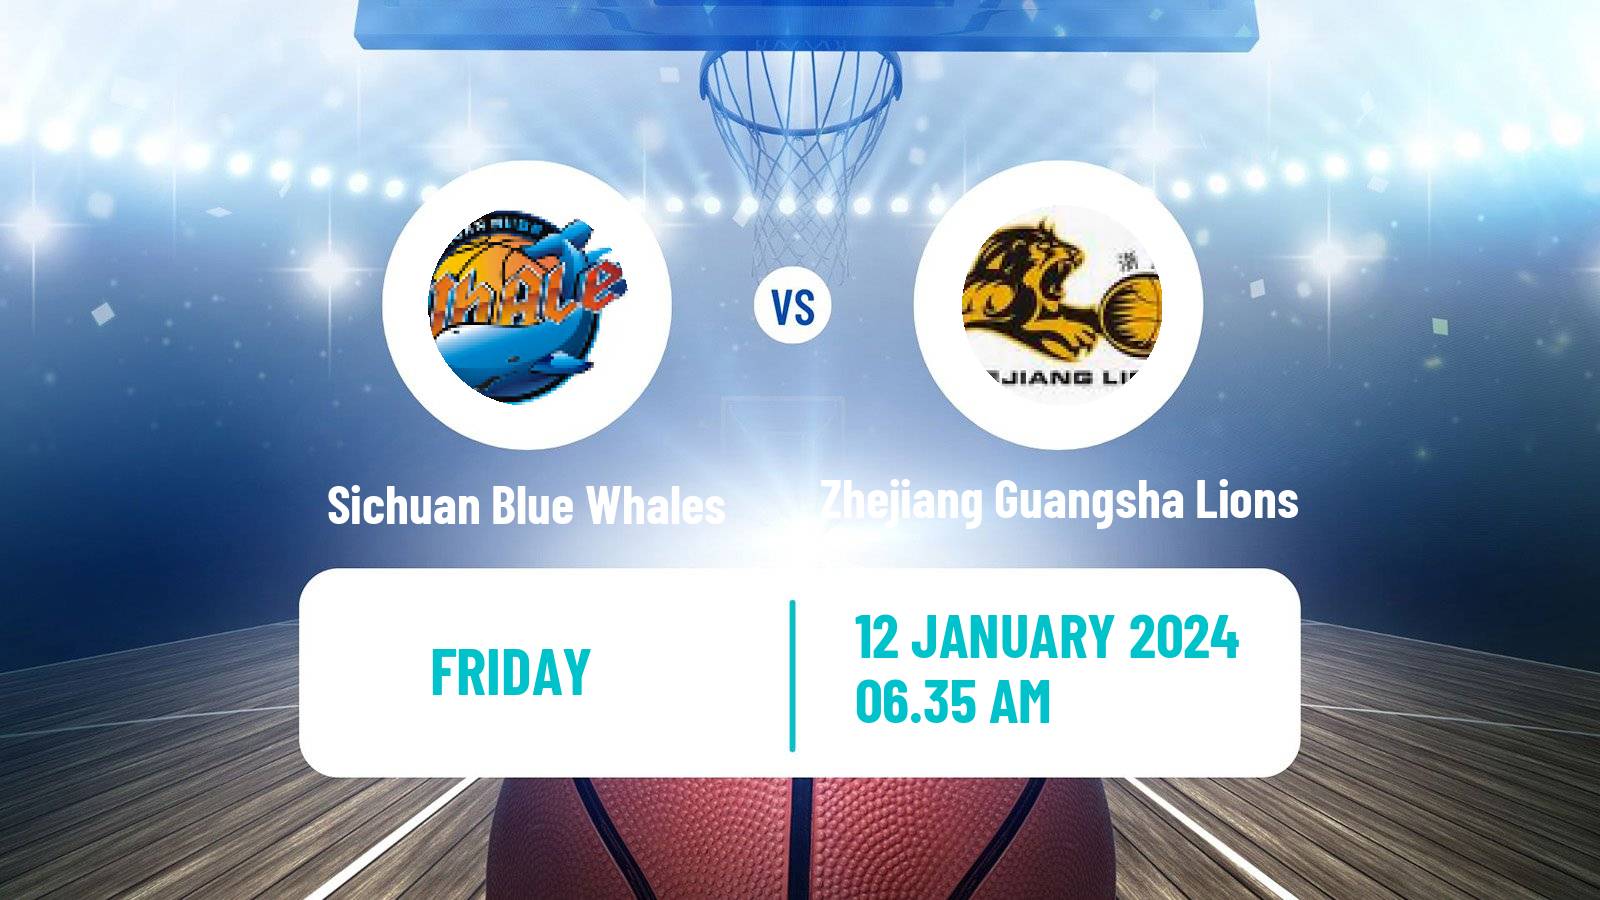 Basketball CBA Sichuan Blue Whales - Zhejiang Guangsha Lions